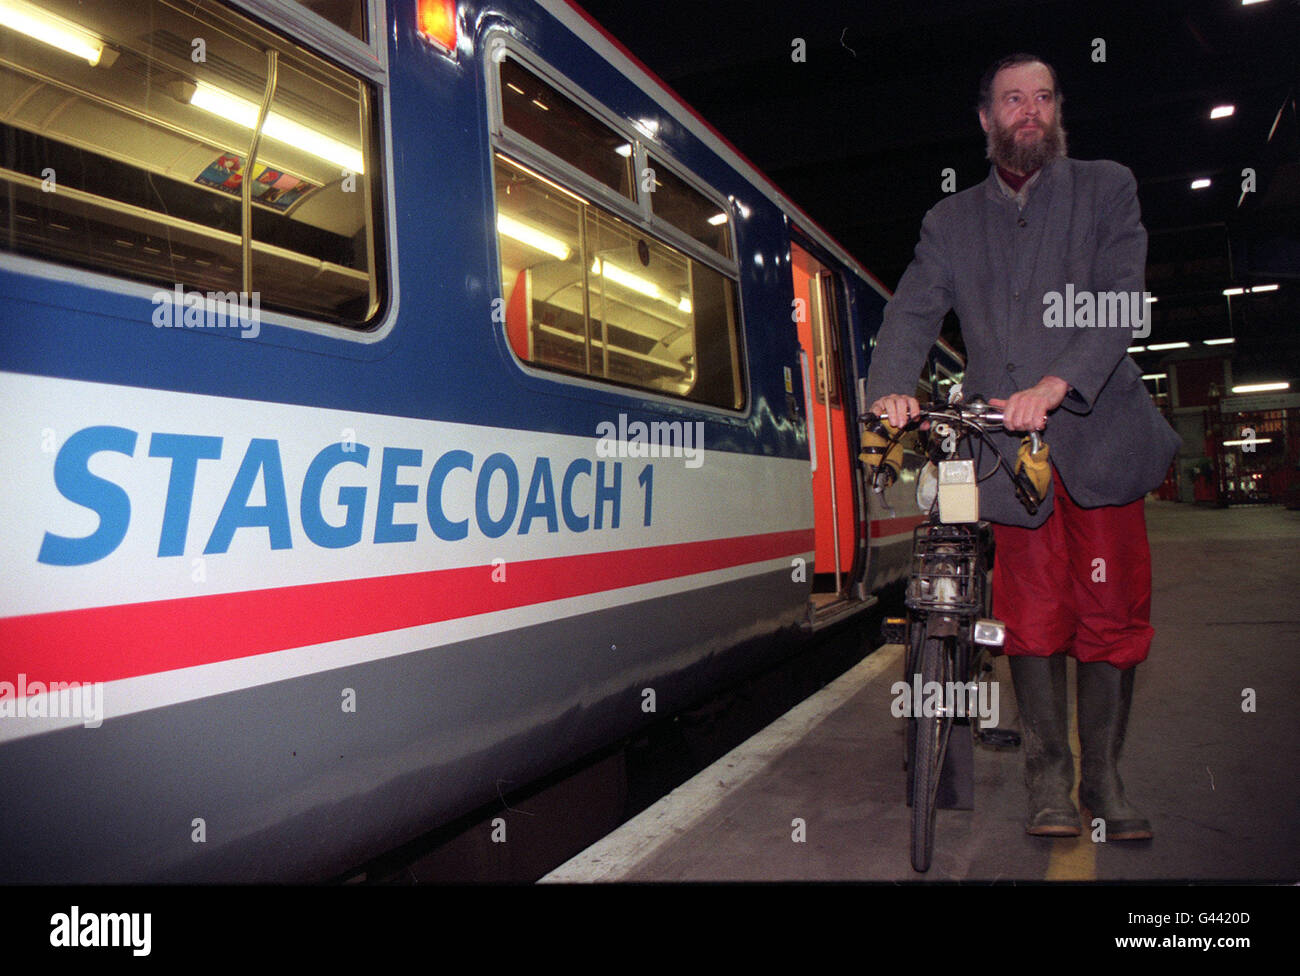 Il passeggero Philip Bedford, 43 anni, da East Sheen, nel sud-ovest di Londra, si disimbarca dal primo treno privatizzato che corre in Inghilterra per quasi mezzo secolo. Il signor Bedford ha fatto la storia per essere il primo passeggero a bordo del treno Stagecoach, che ha corso da Twickenham a Waterloo. Foto Stock